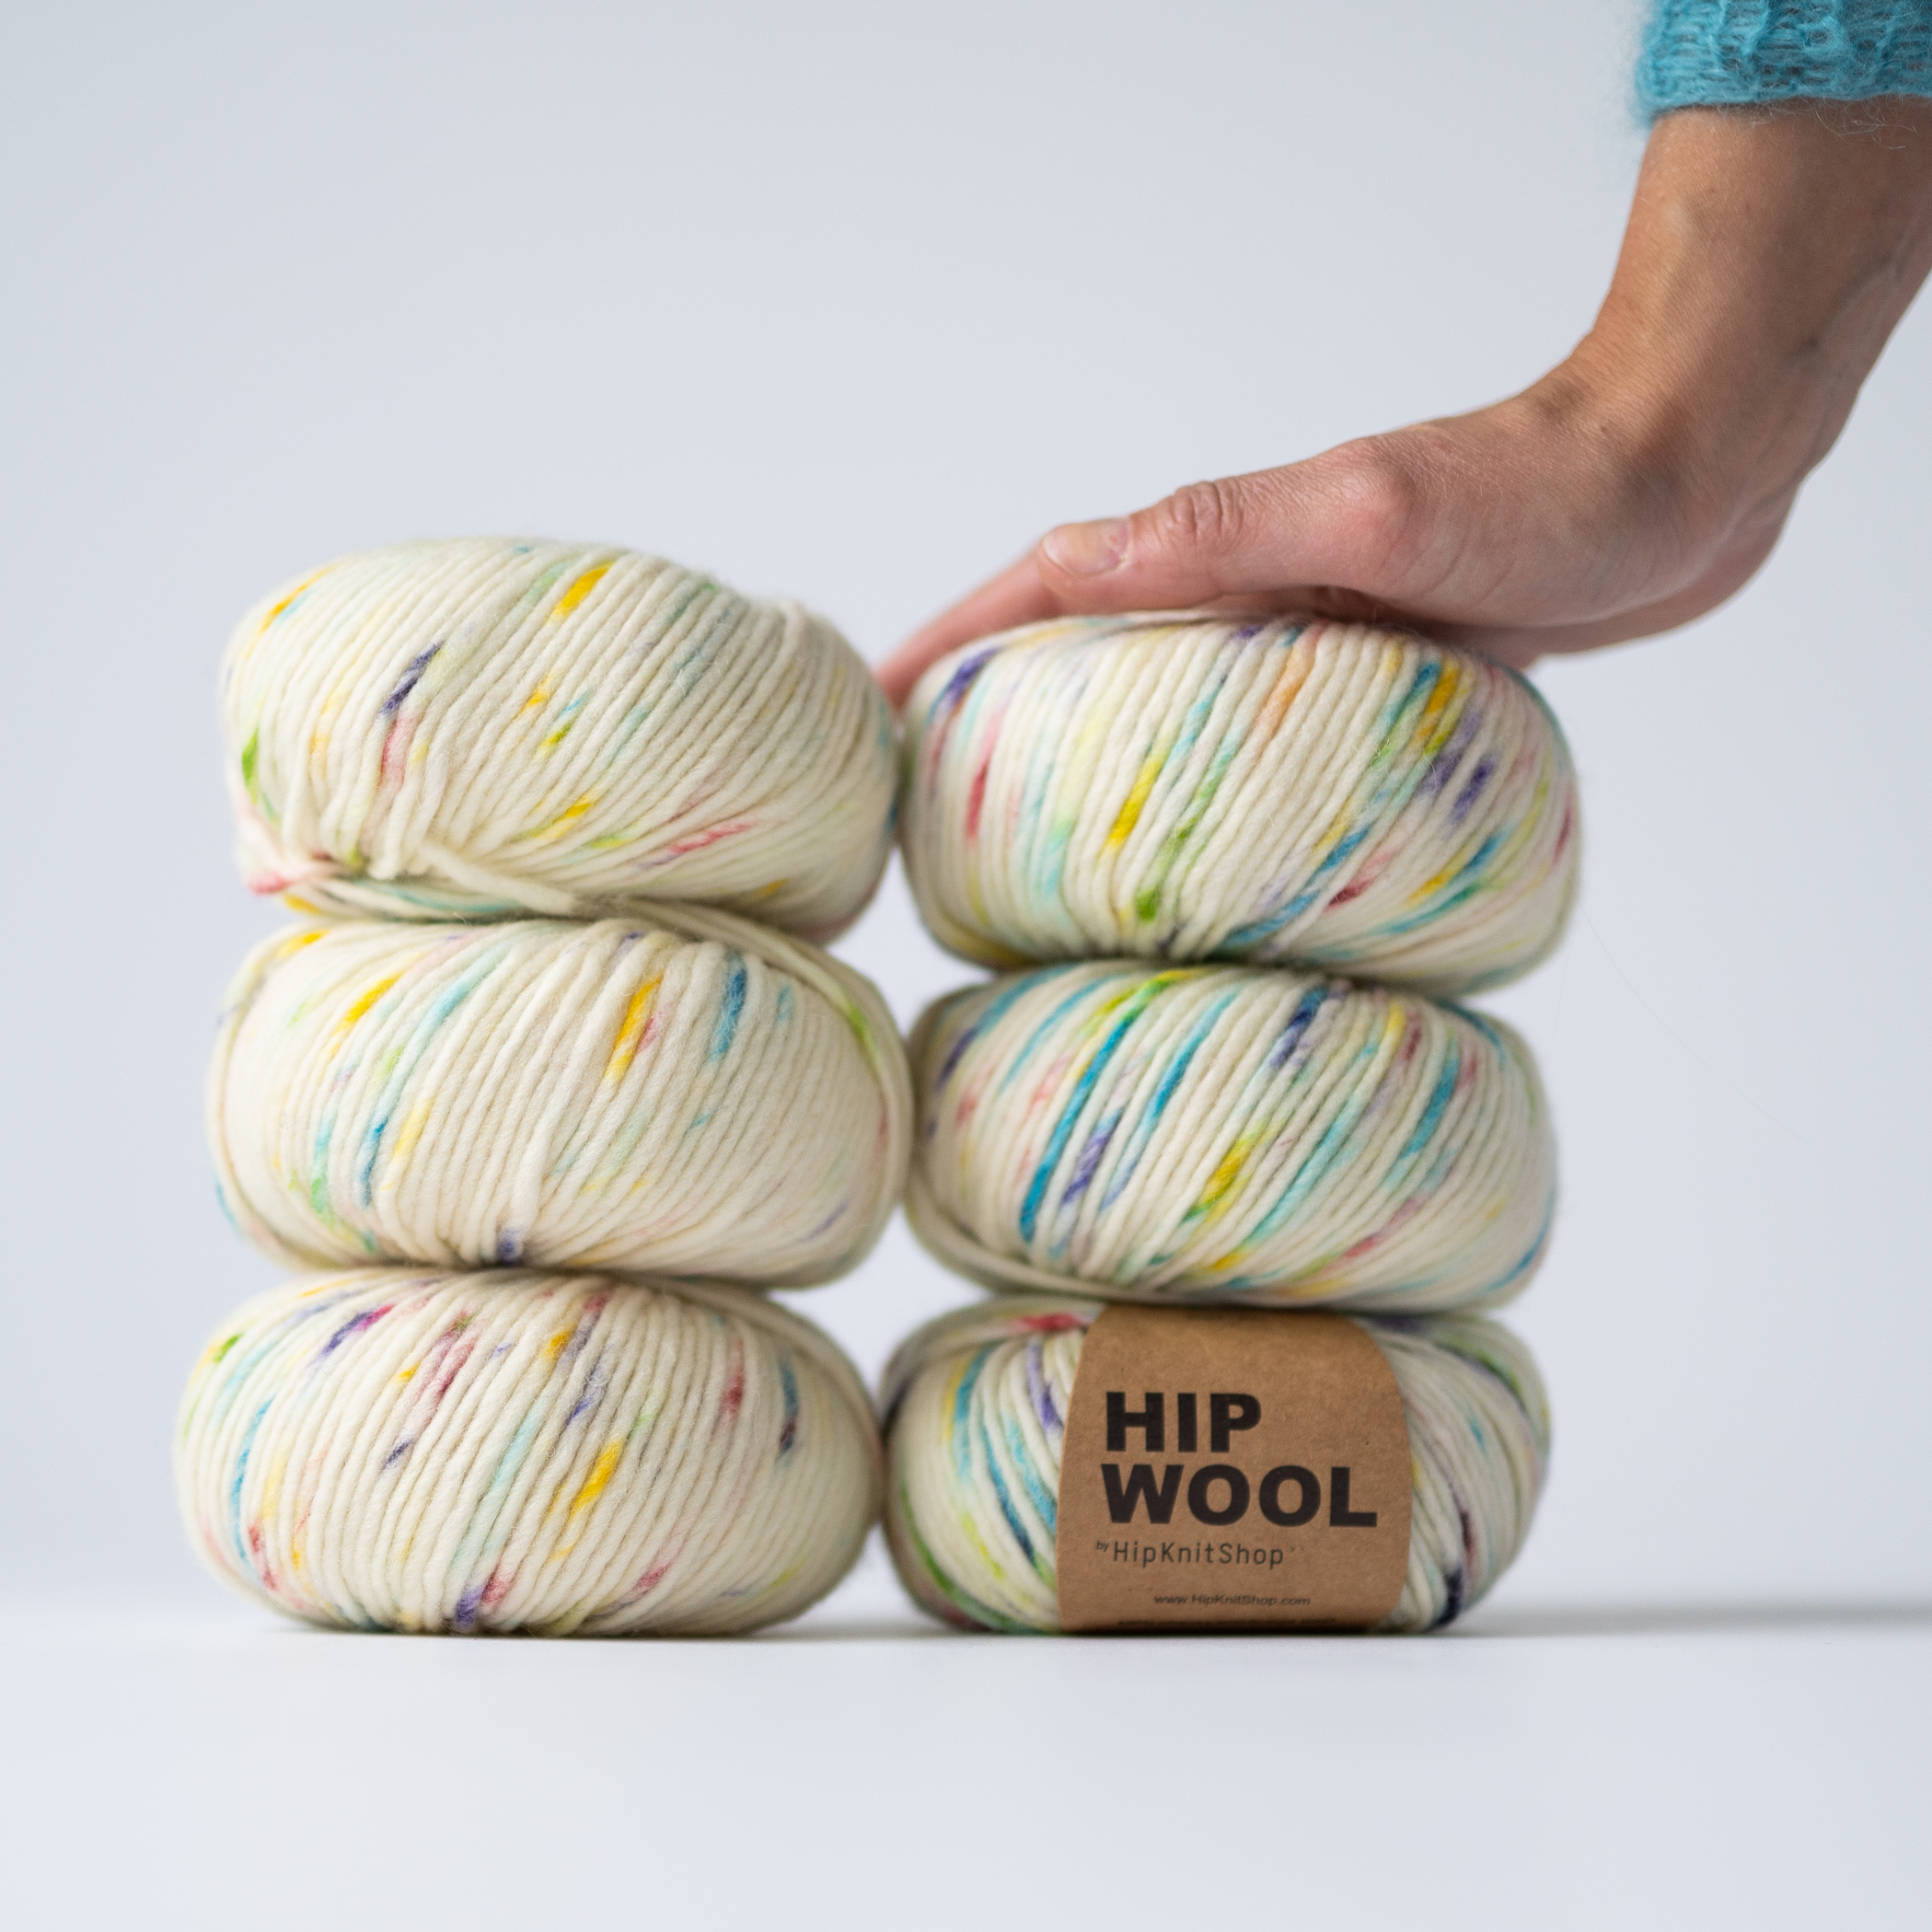 speckled yarn - Tutti Frutti yarn | Sprinkle yarn colorful - by HipKnitShop - 24/05/2019